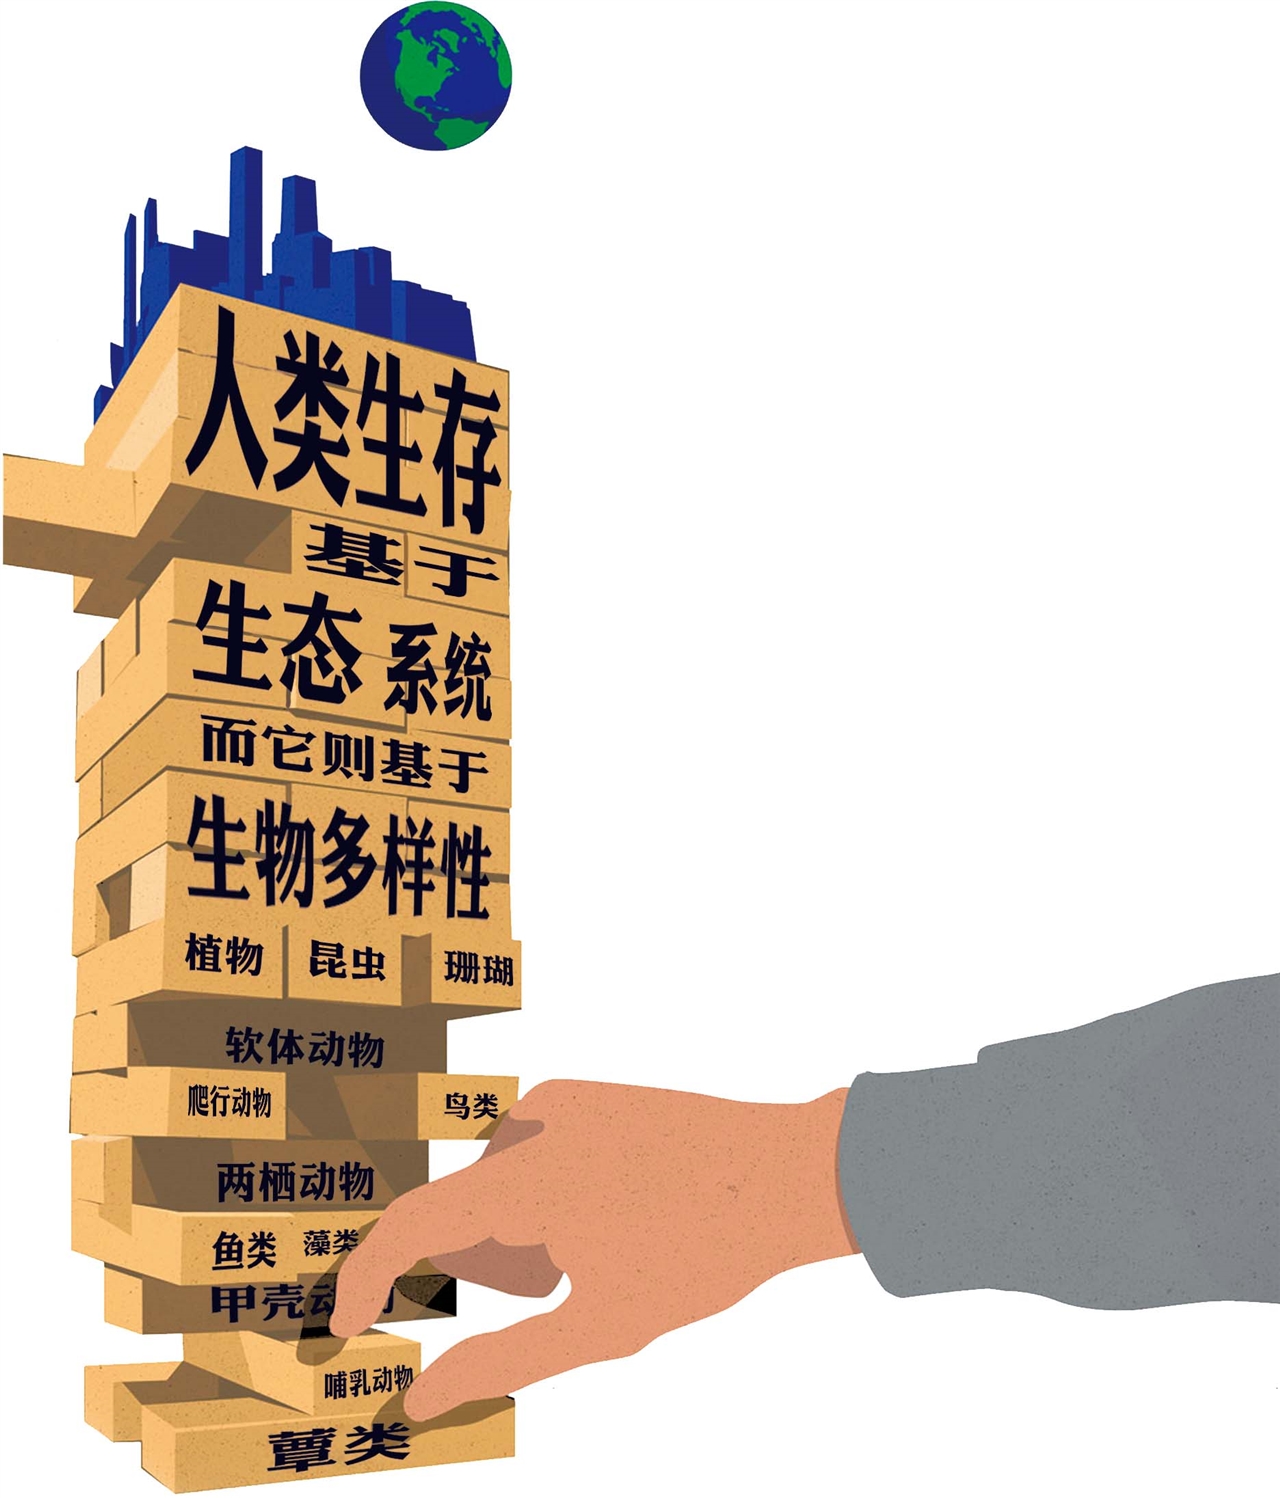 北京延长老旧小区住房公积金贷款年限